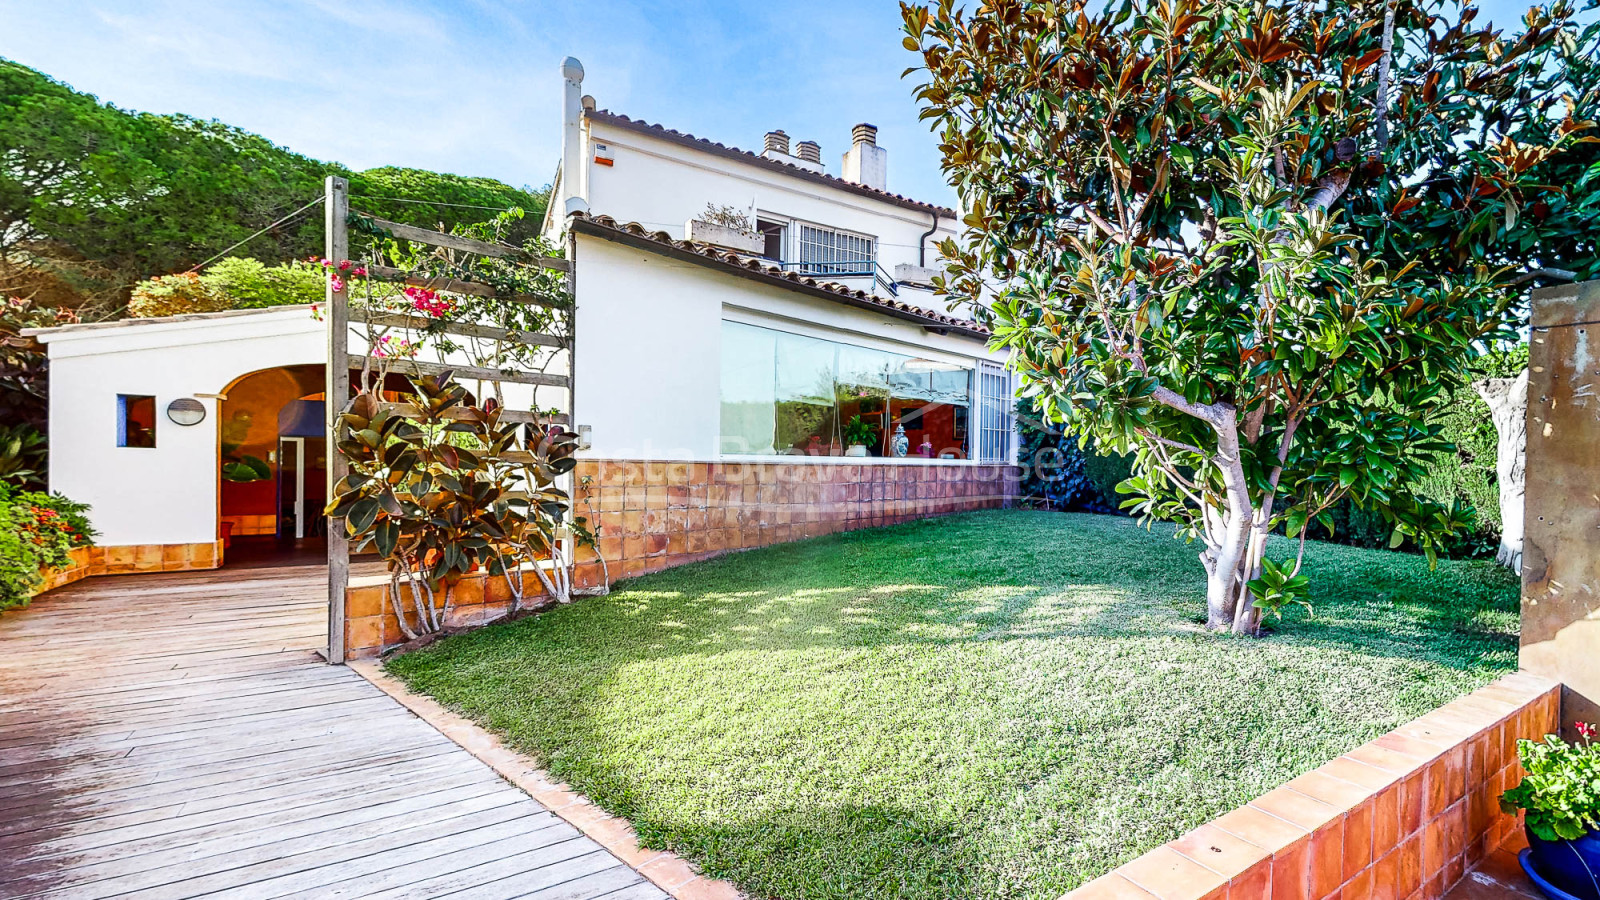 Casa amb jardí a Palamós, a 2 min a peu de platja de La Fosca